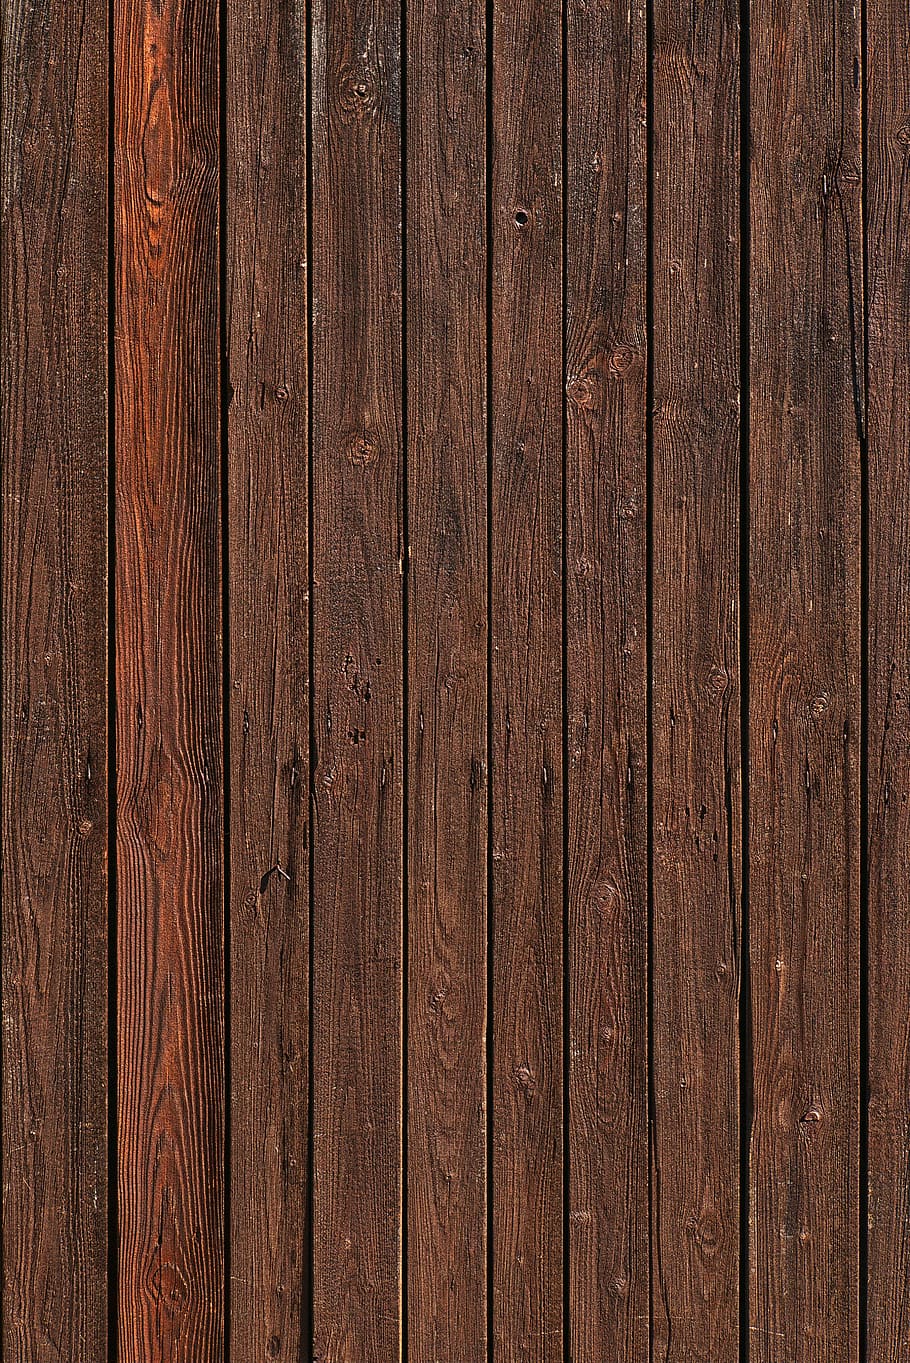 papan kayu, papan, lapuk, ranting, reng, kayu, kayu latar belakang, pola, tekstur, tekstur kayu